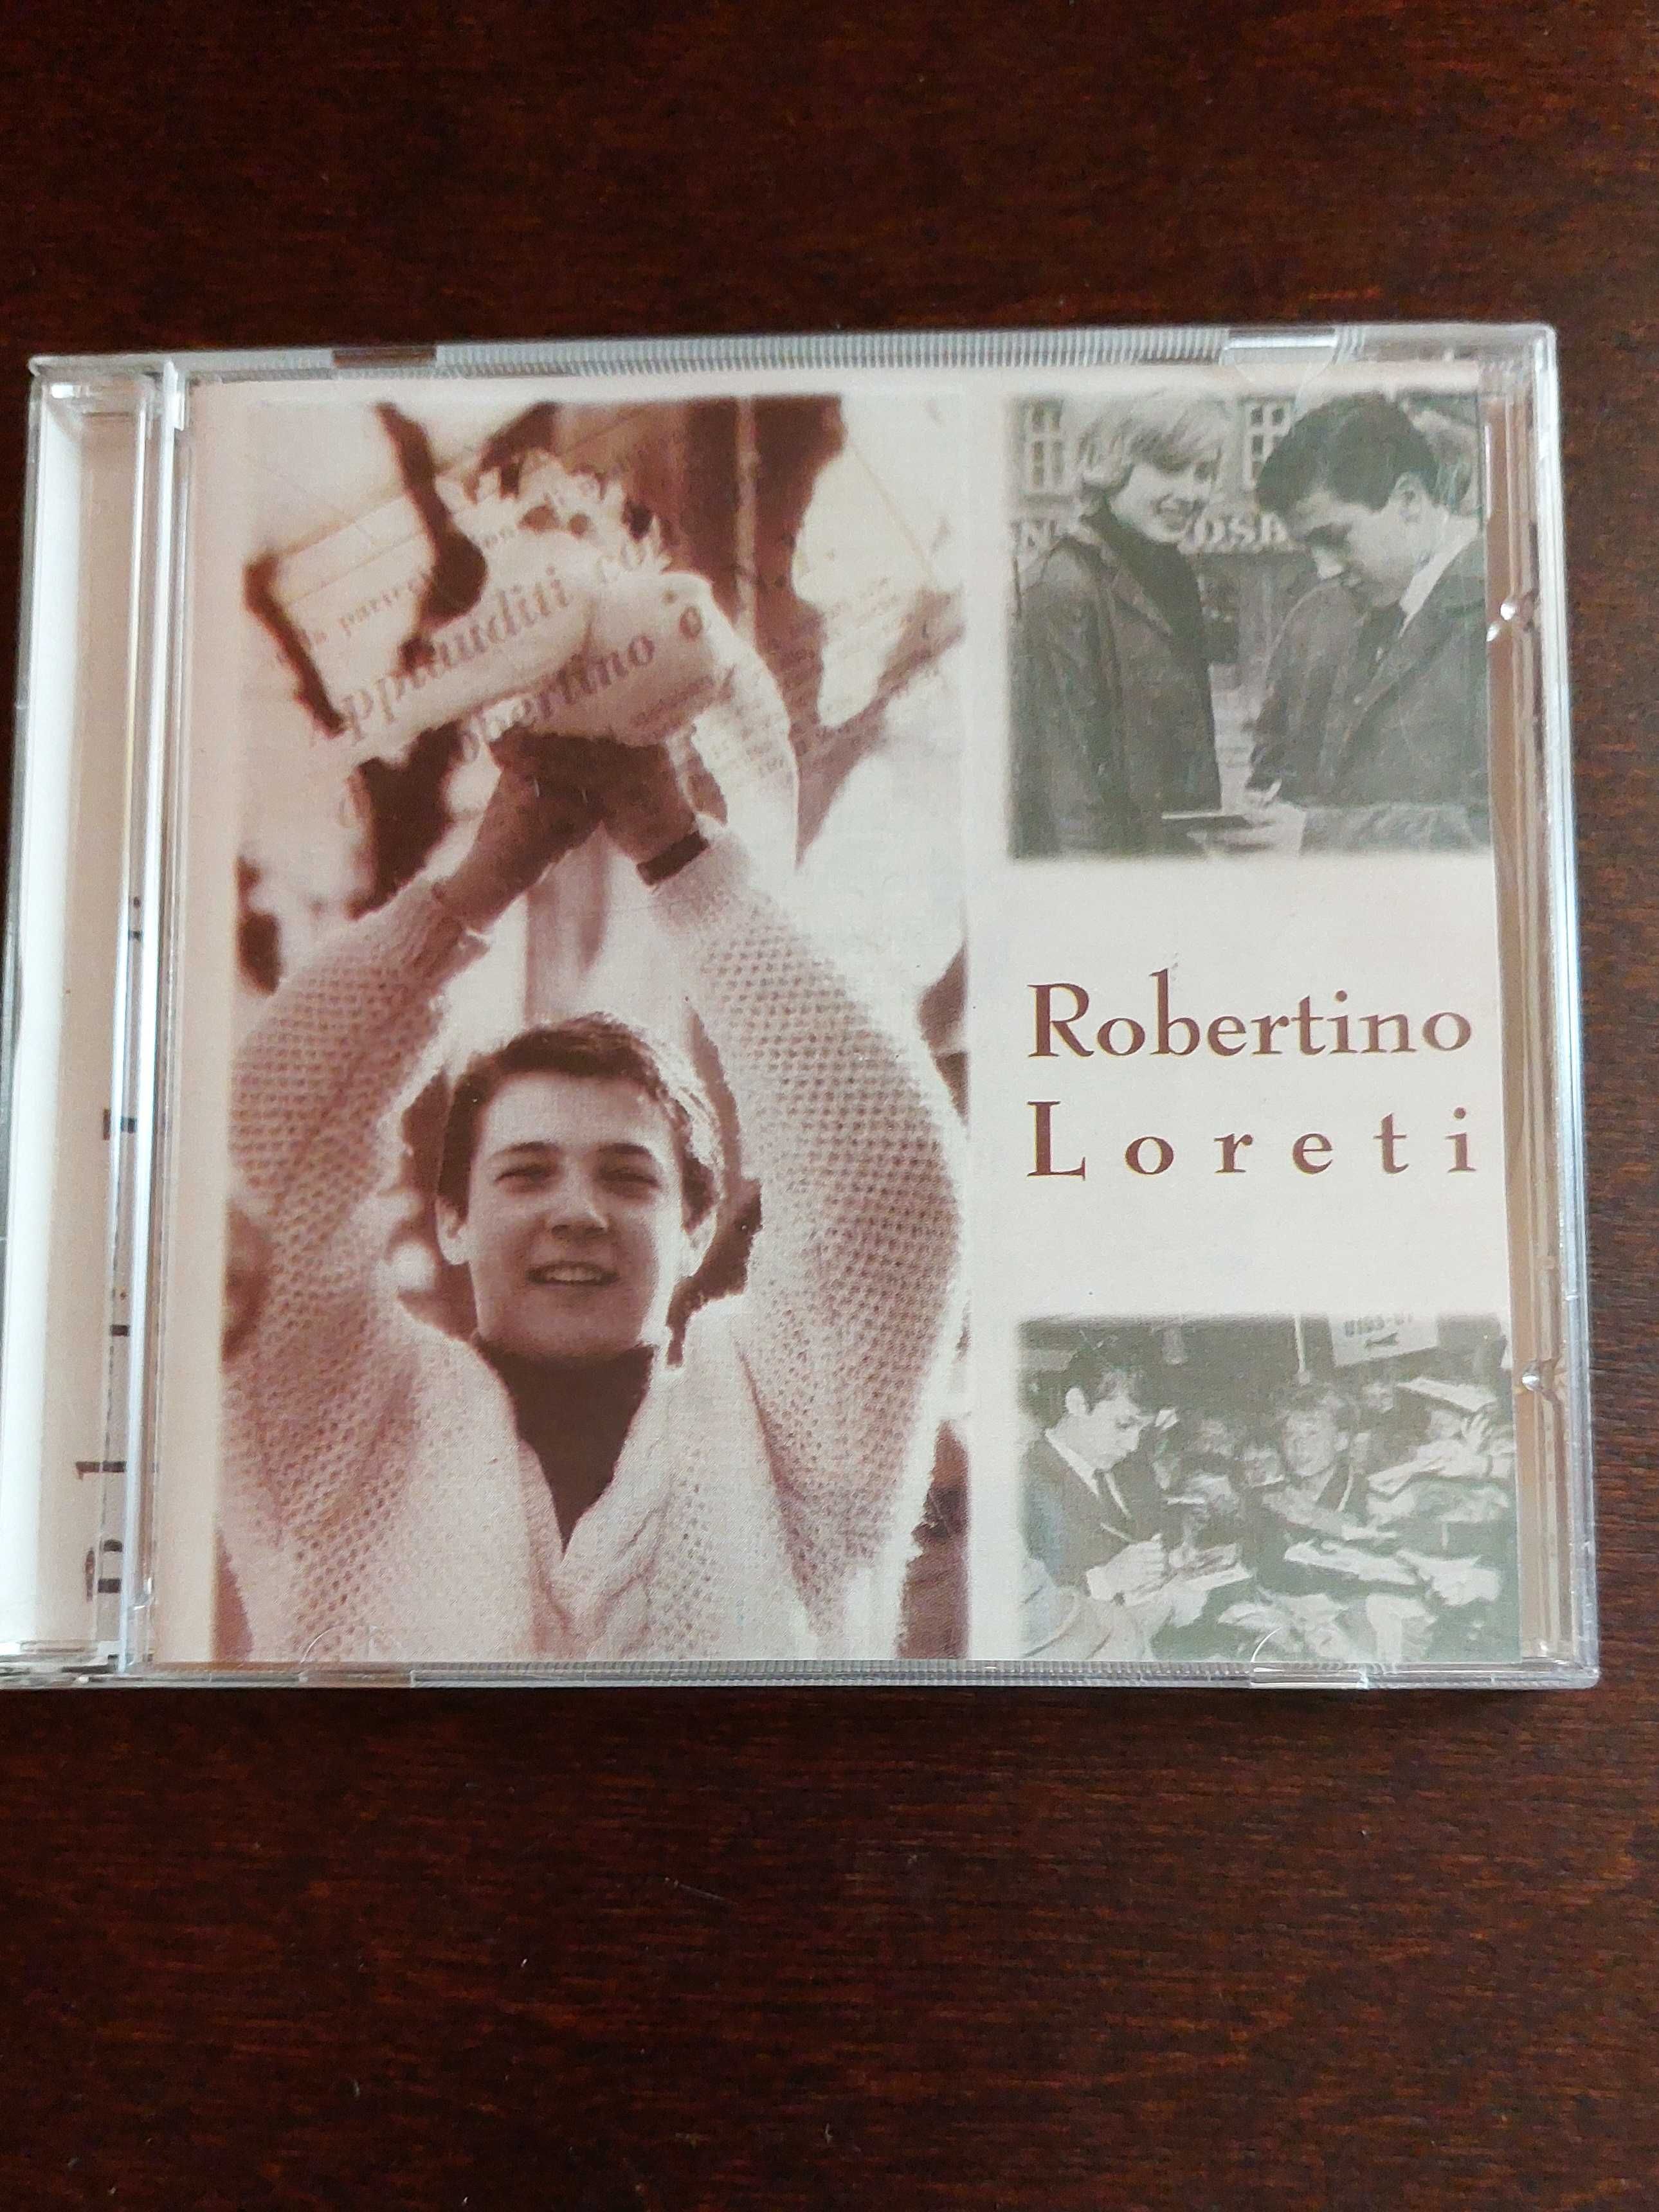 CD диски Robertino Loreti и ретро разные